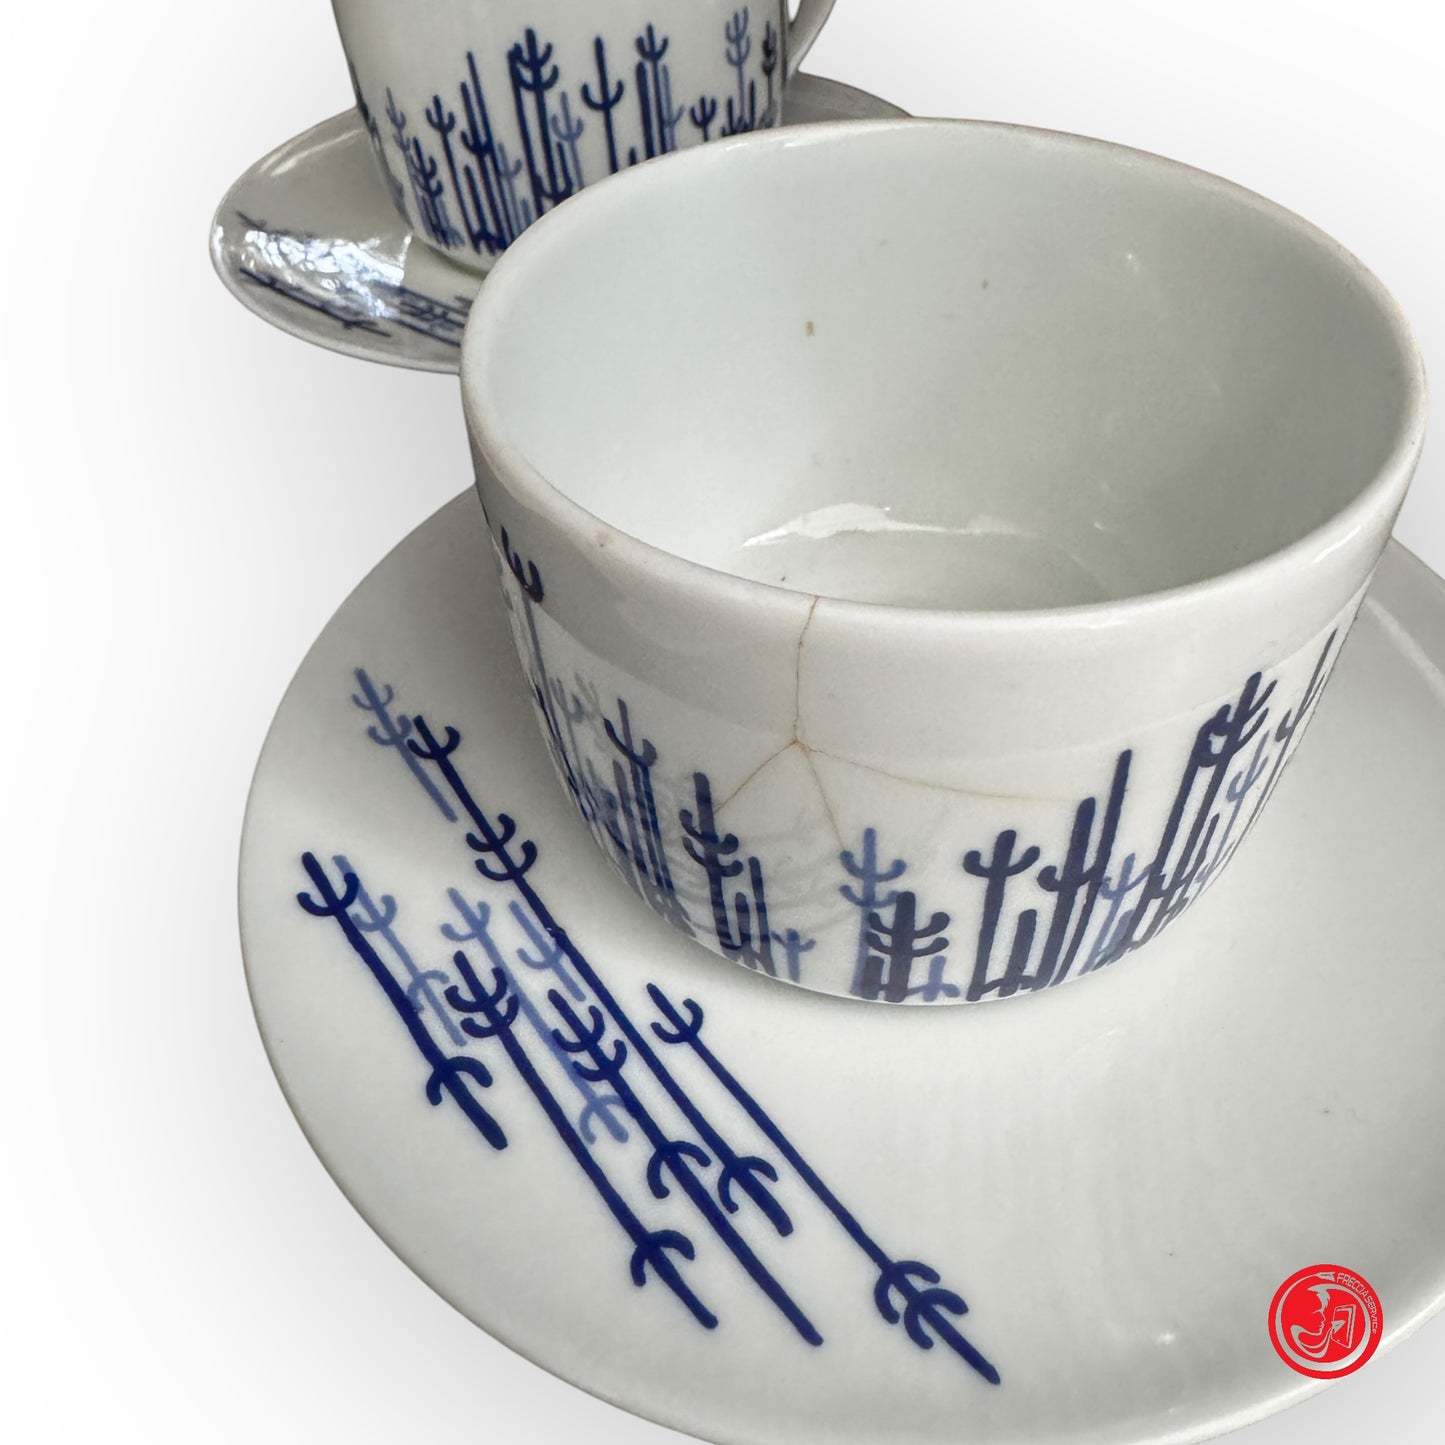 4 tazze in ceramica Richard Ginori con decorazioni blu